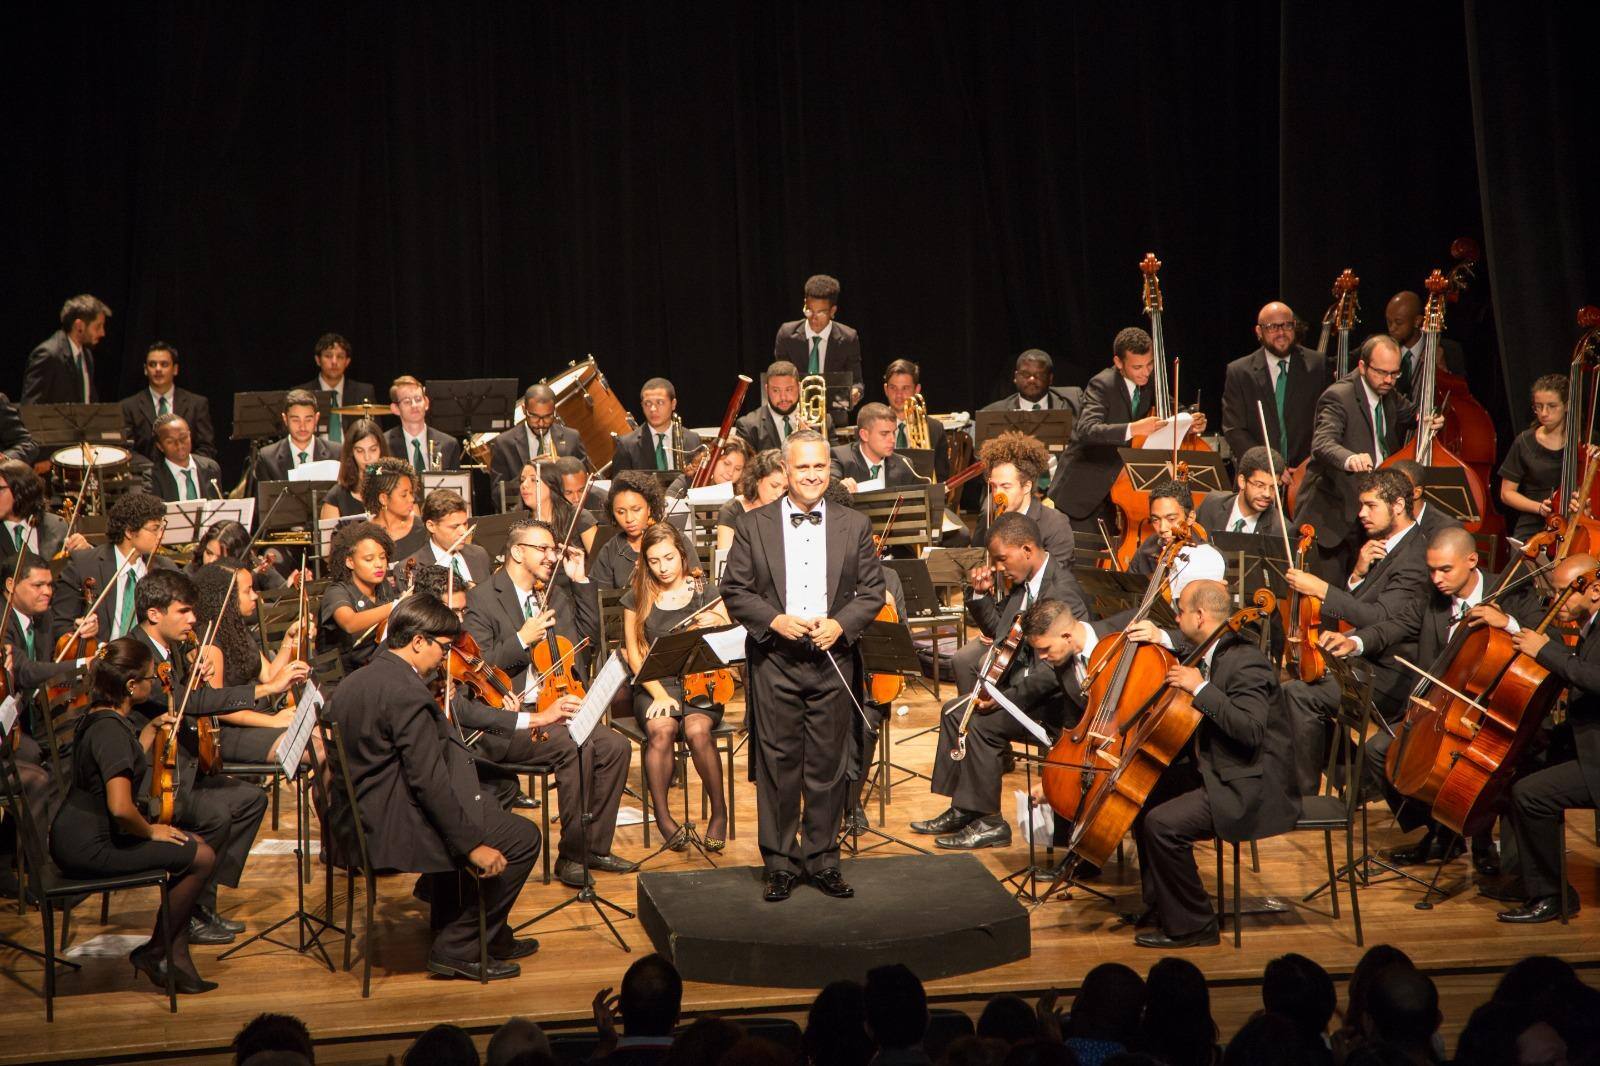 Evento com a Orquestra Sinfônica de Betim terá a participação do Coral Inclusivo Adefib Sabra e da Orquestra de Flautas Doce da Escola de Música Sabra